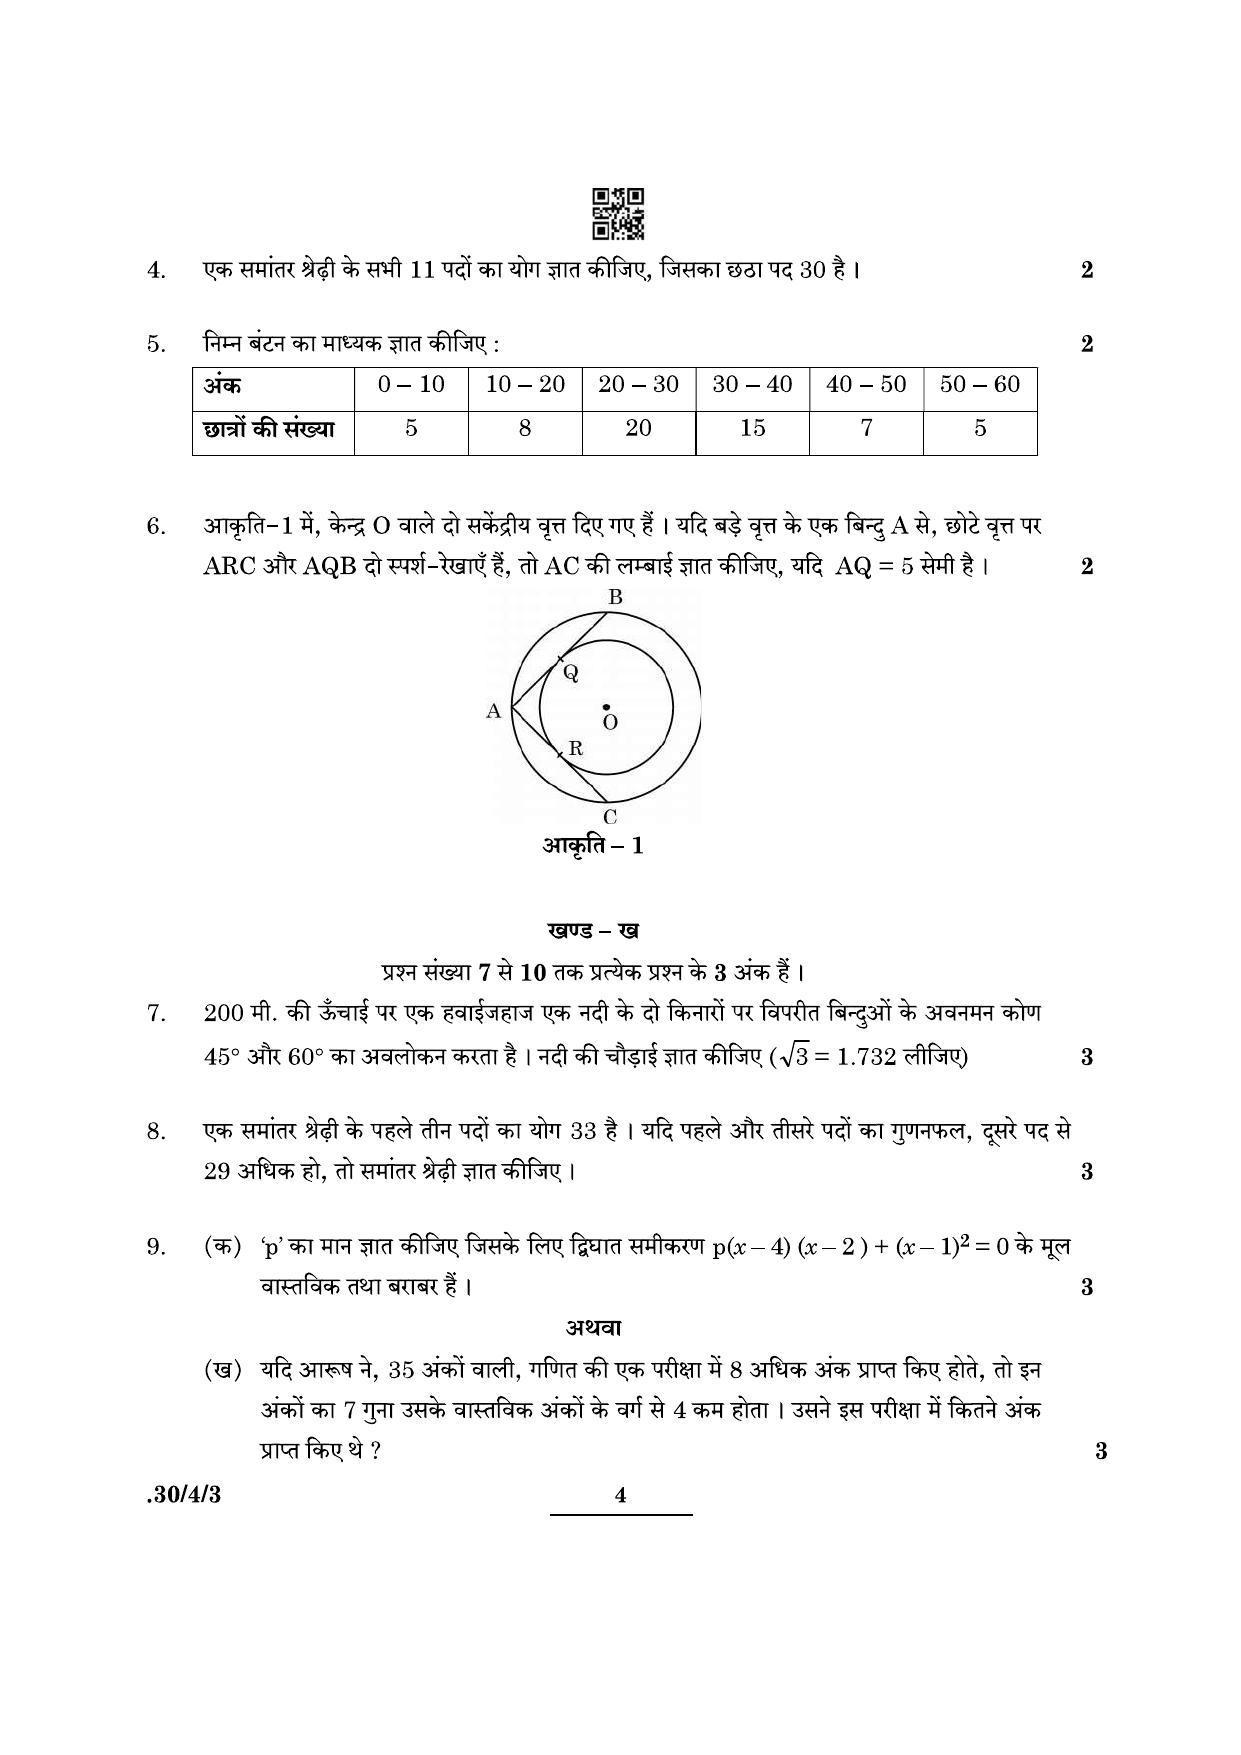 CBSE Class 10 Maths (30/4/3 - SET III) 2022 Question Paper - Page 4